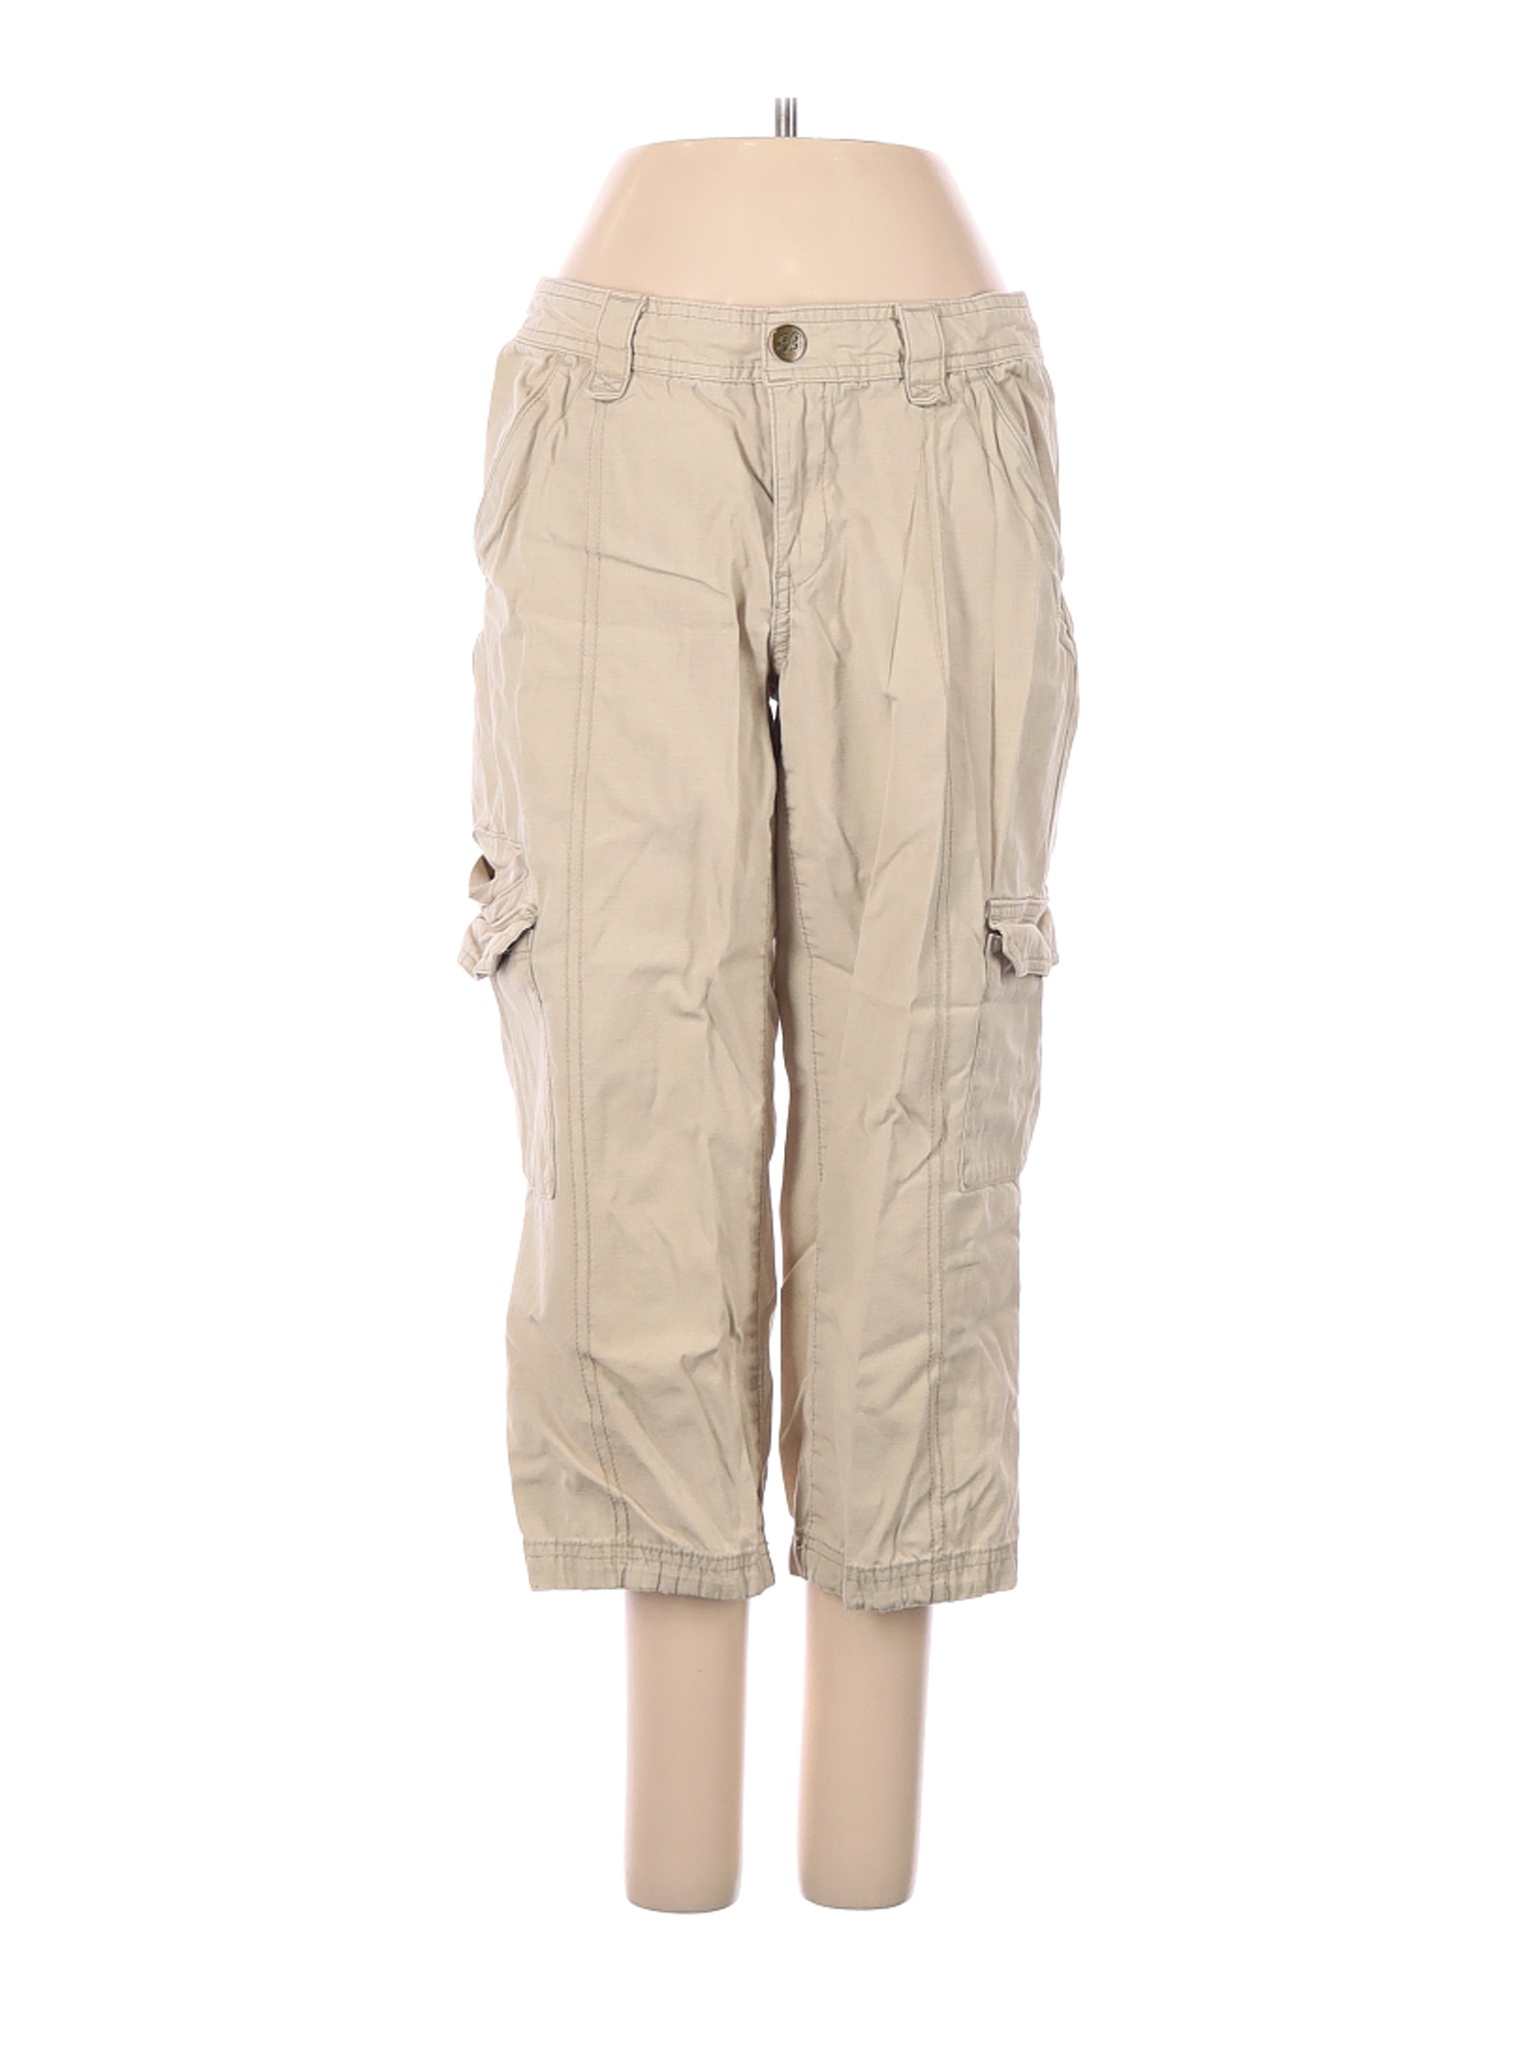 Eddie Bauer Women Brown Cargo Pants 2 | eBay